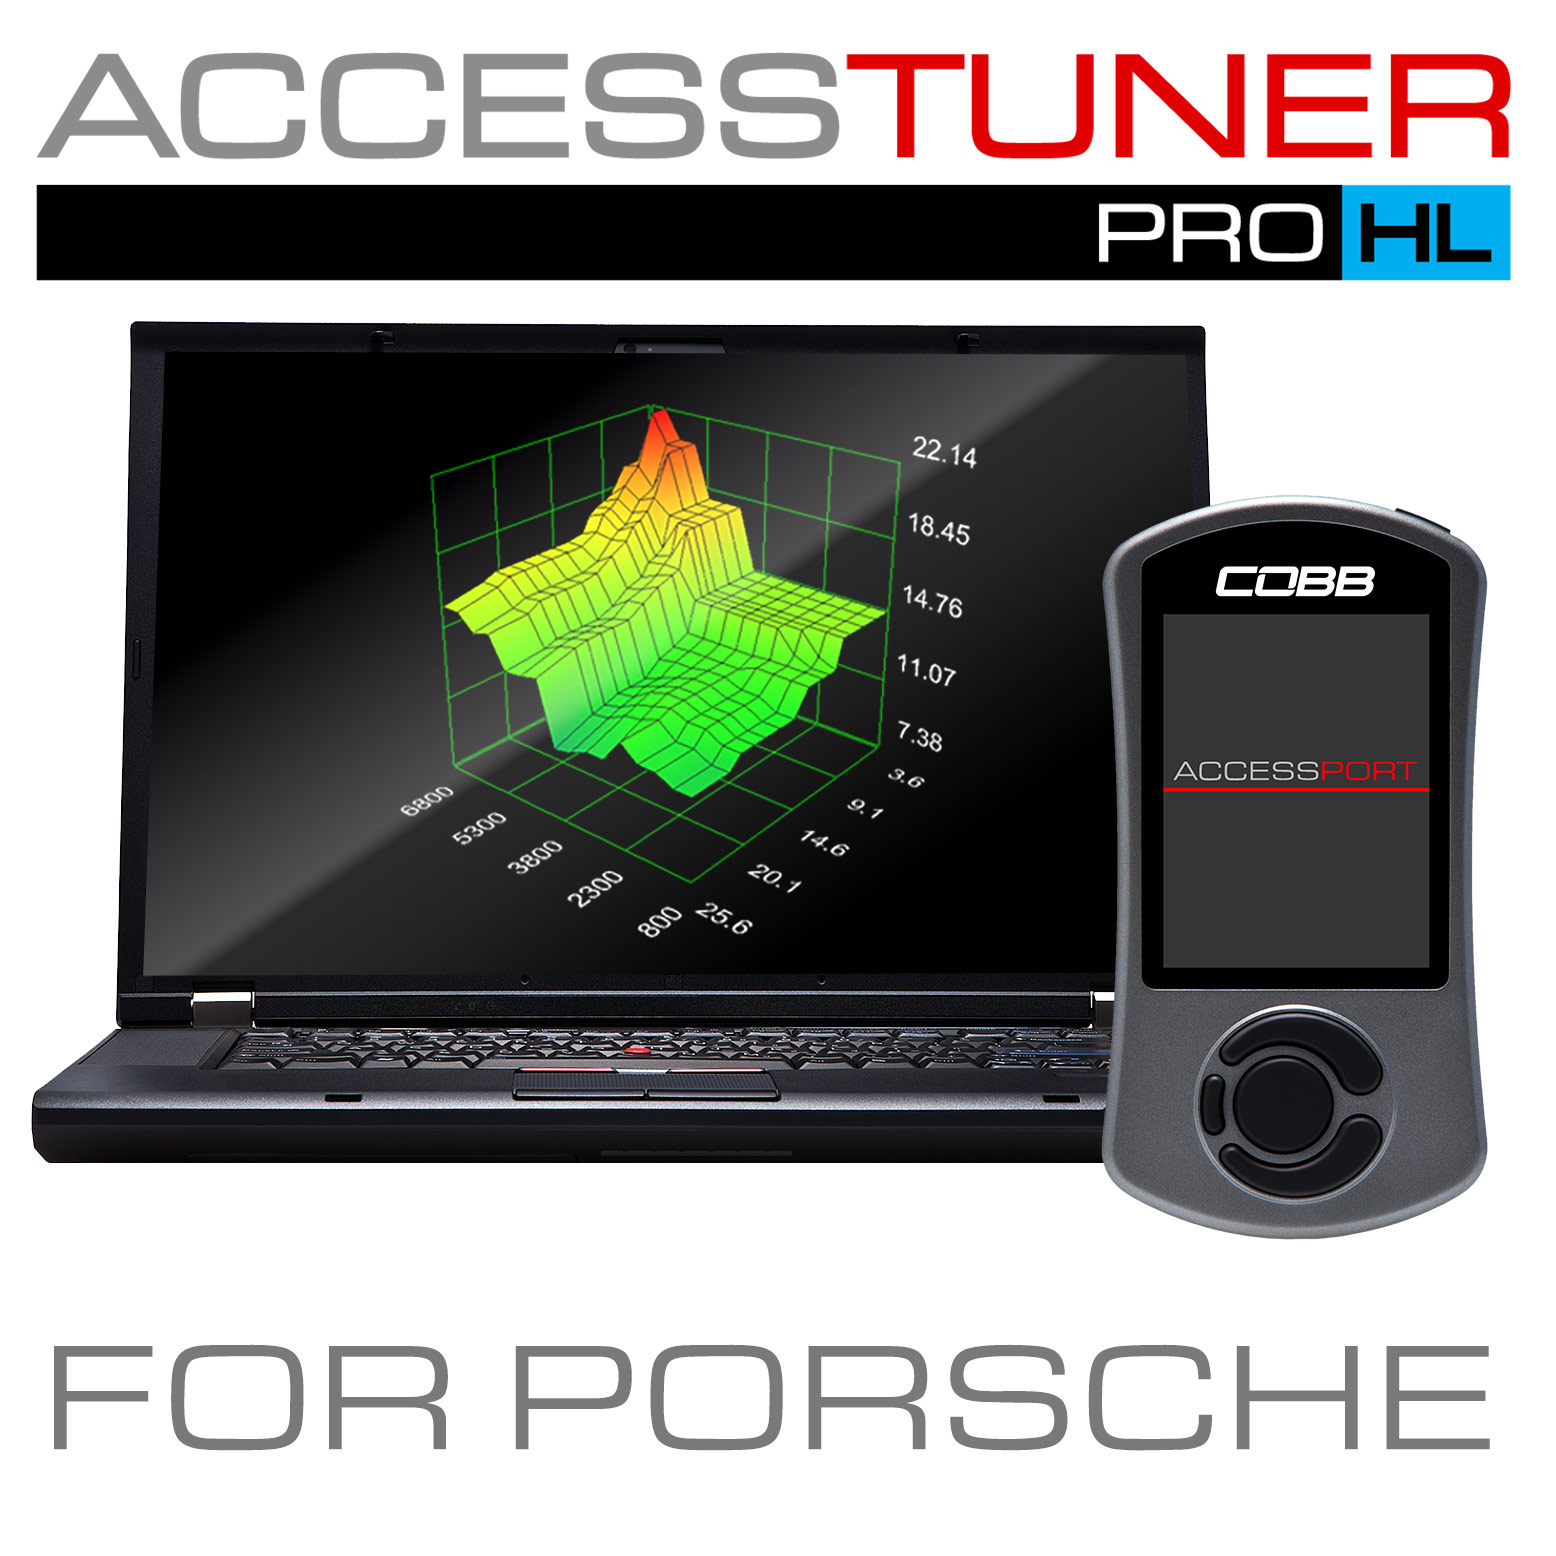 COBB Tuning Accesstuner Pro HL for Porsche